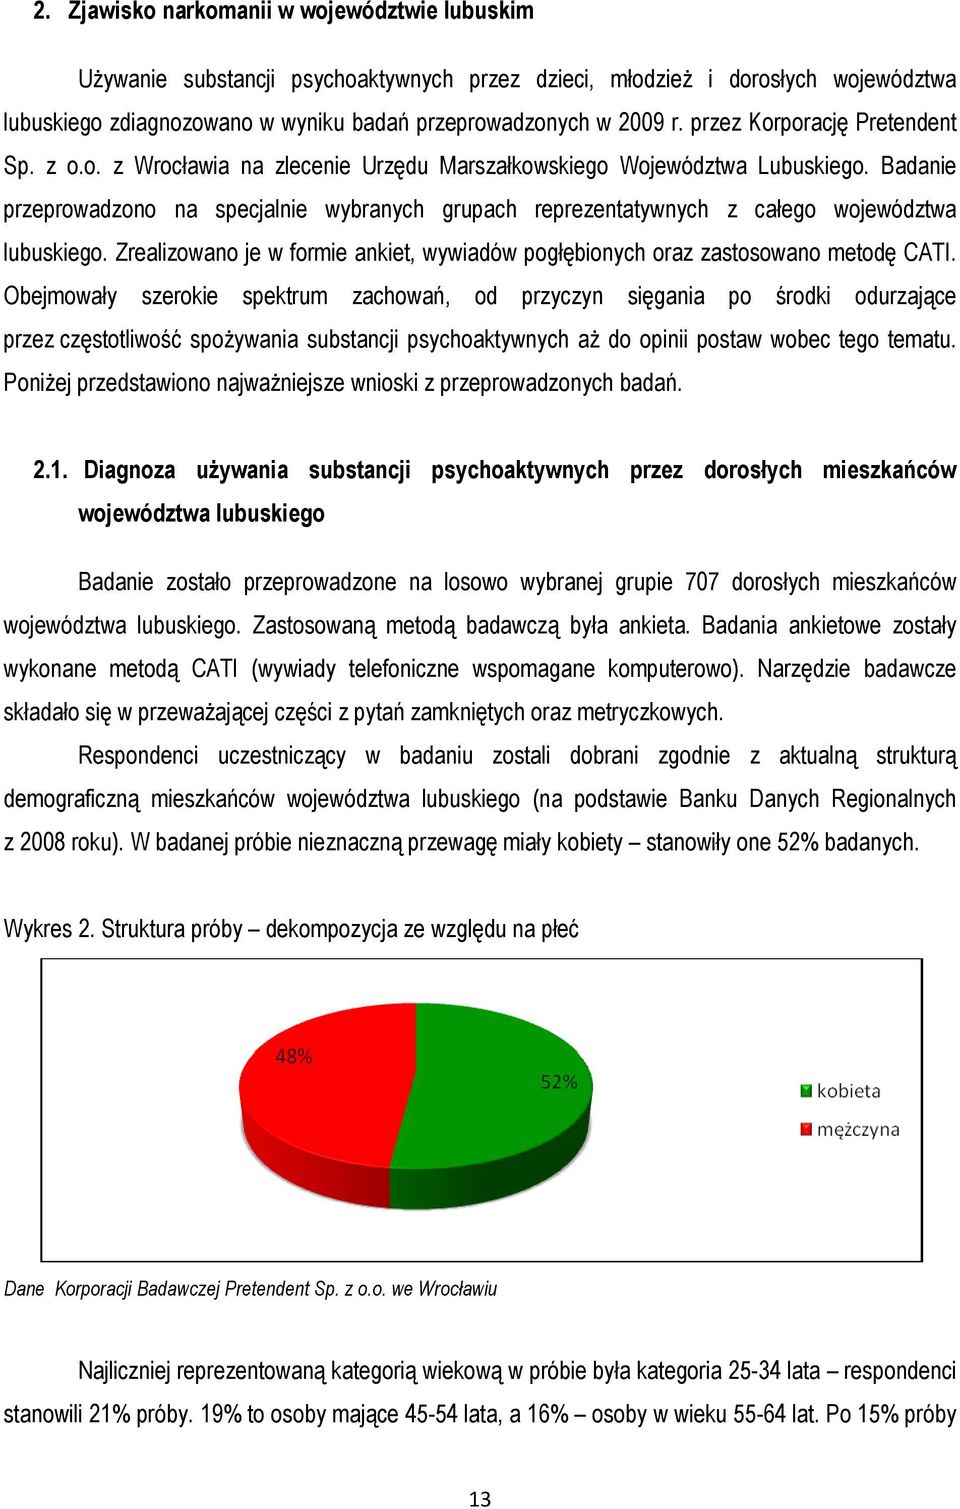 Badanie przeprowadzono na specjalnie wybranych grupach reprezentatywnych z całego województwa lubuskiego. Zrealizowano je w formie ankiet, wywiadów pogłębionych oraz zastosowano metodę CATI.